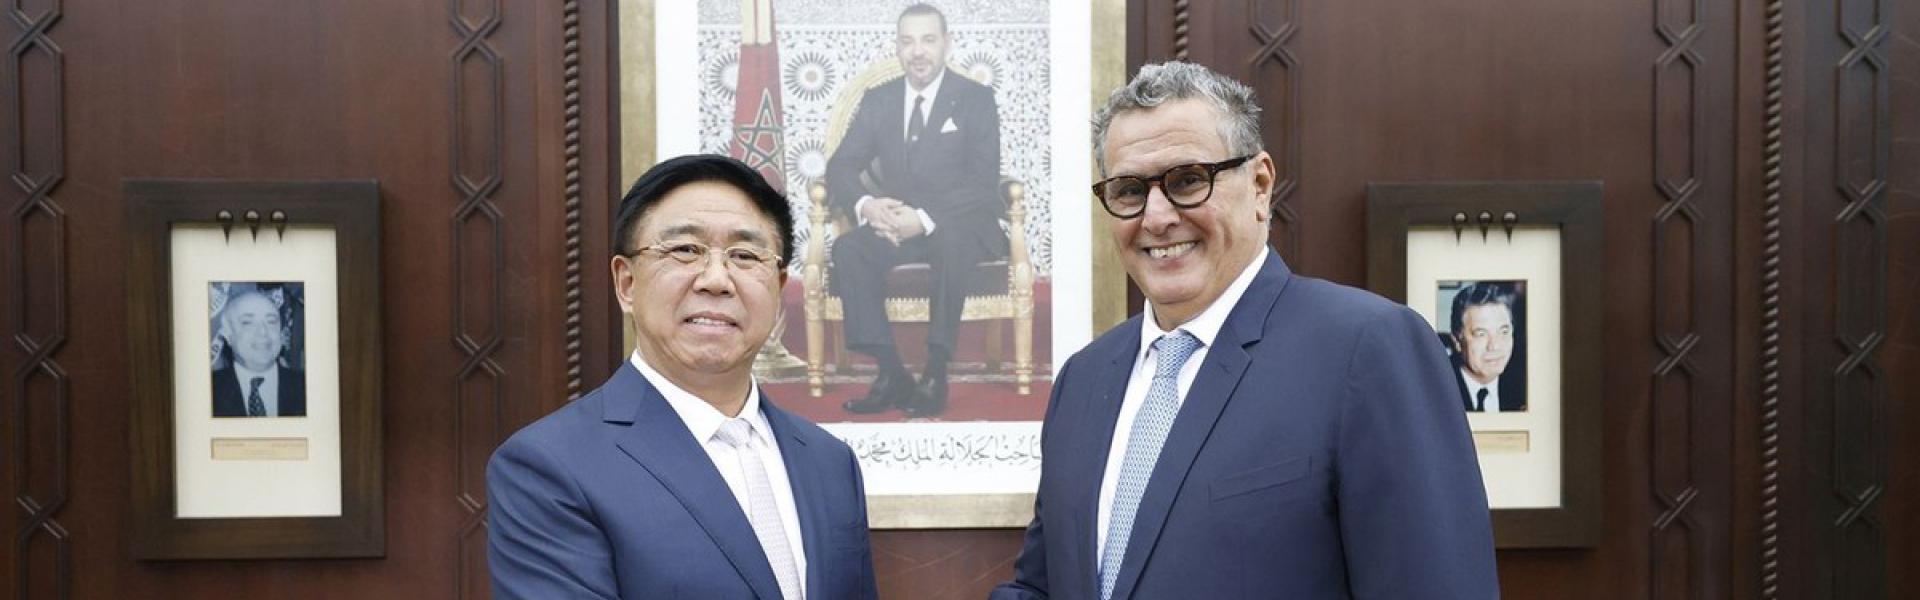 المغرب يعزز ريادته في استقطاب الاستثمارات الأجنبية